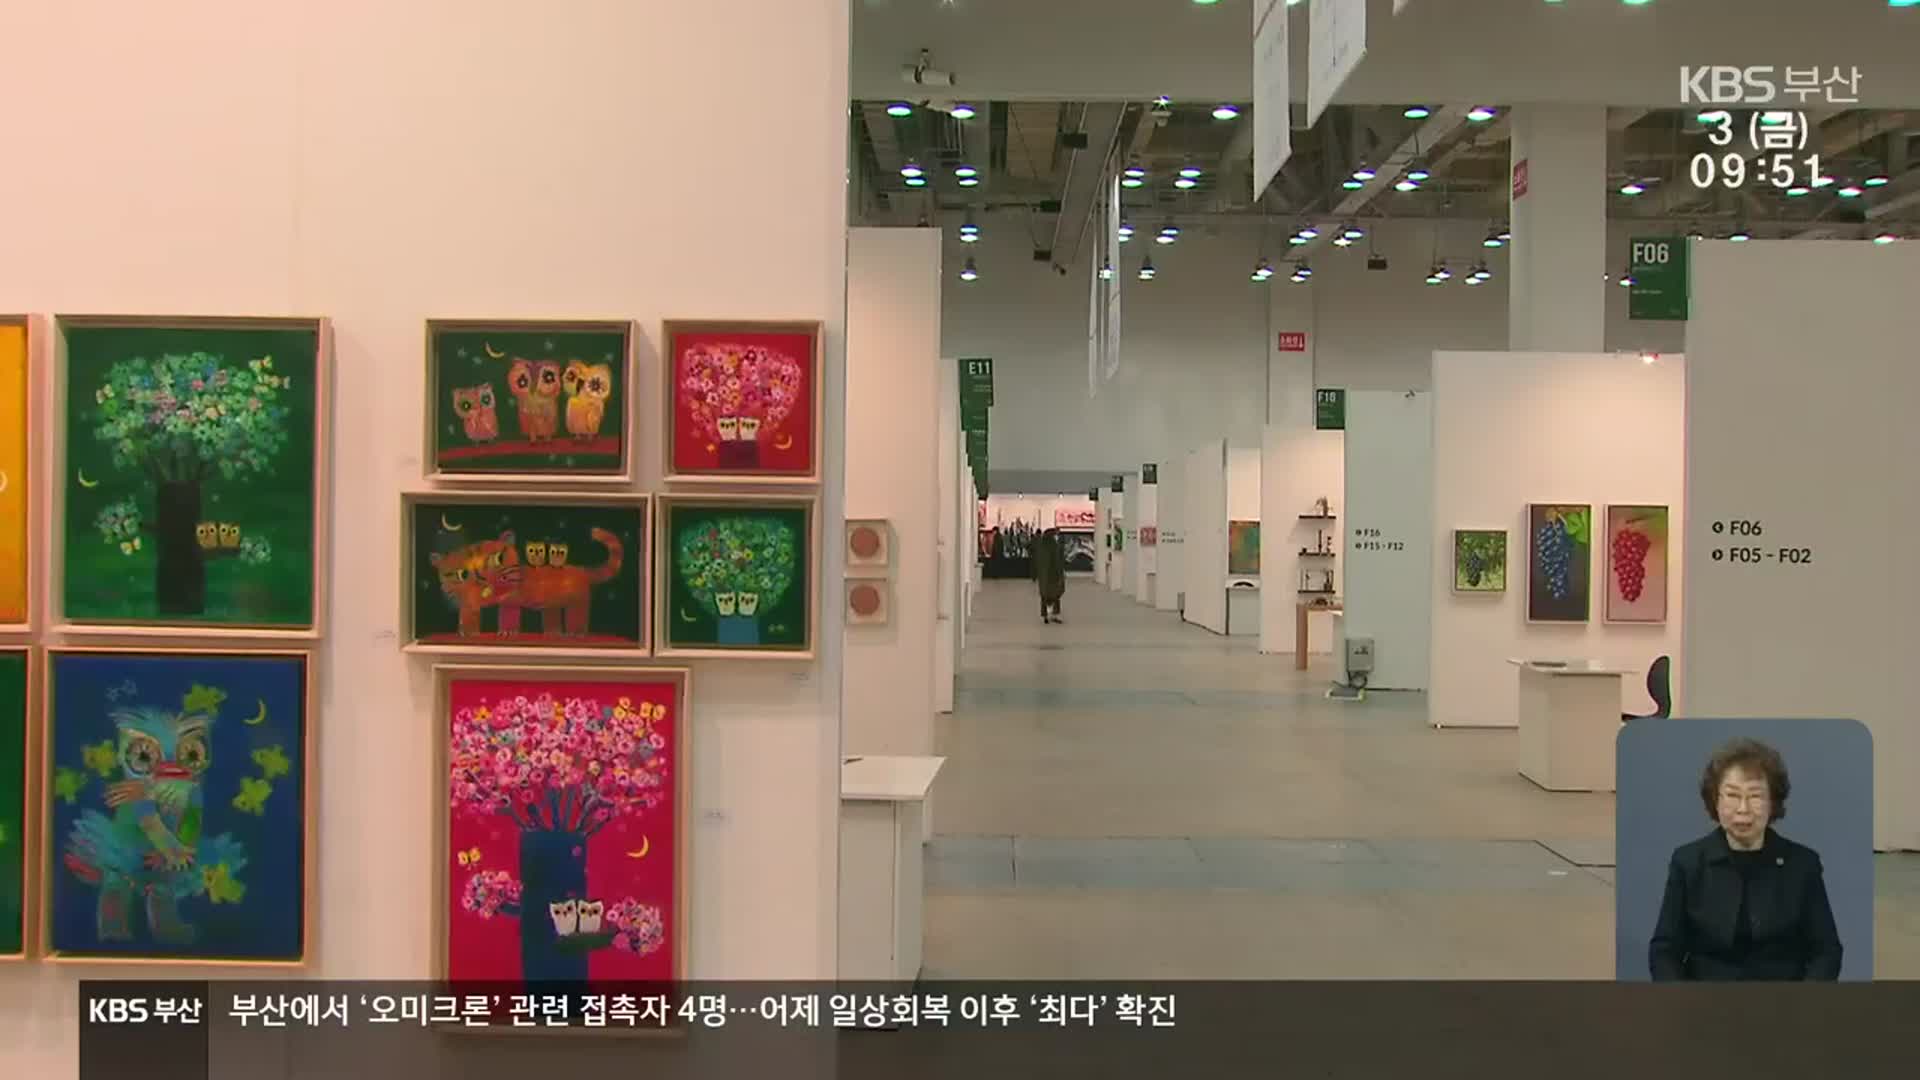 [문화톡톡] 직거래 미술시장…메타버스 전시관도 마련